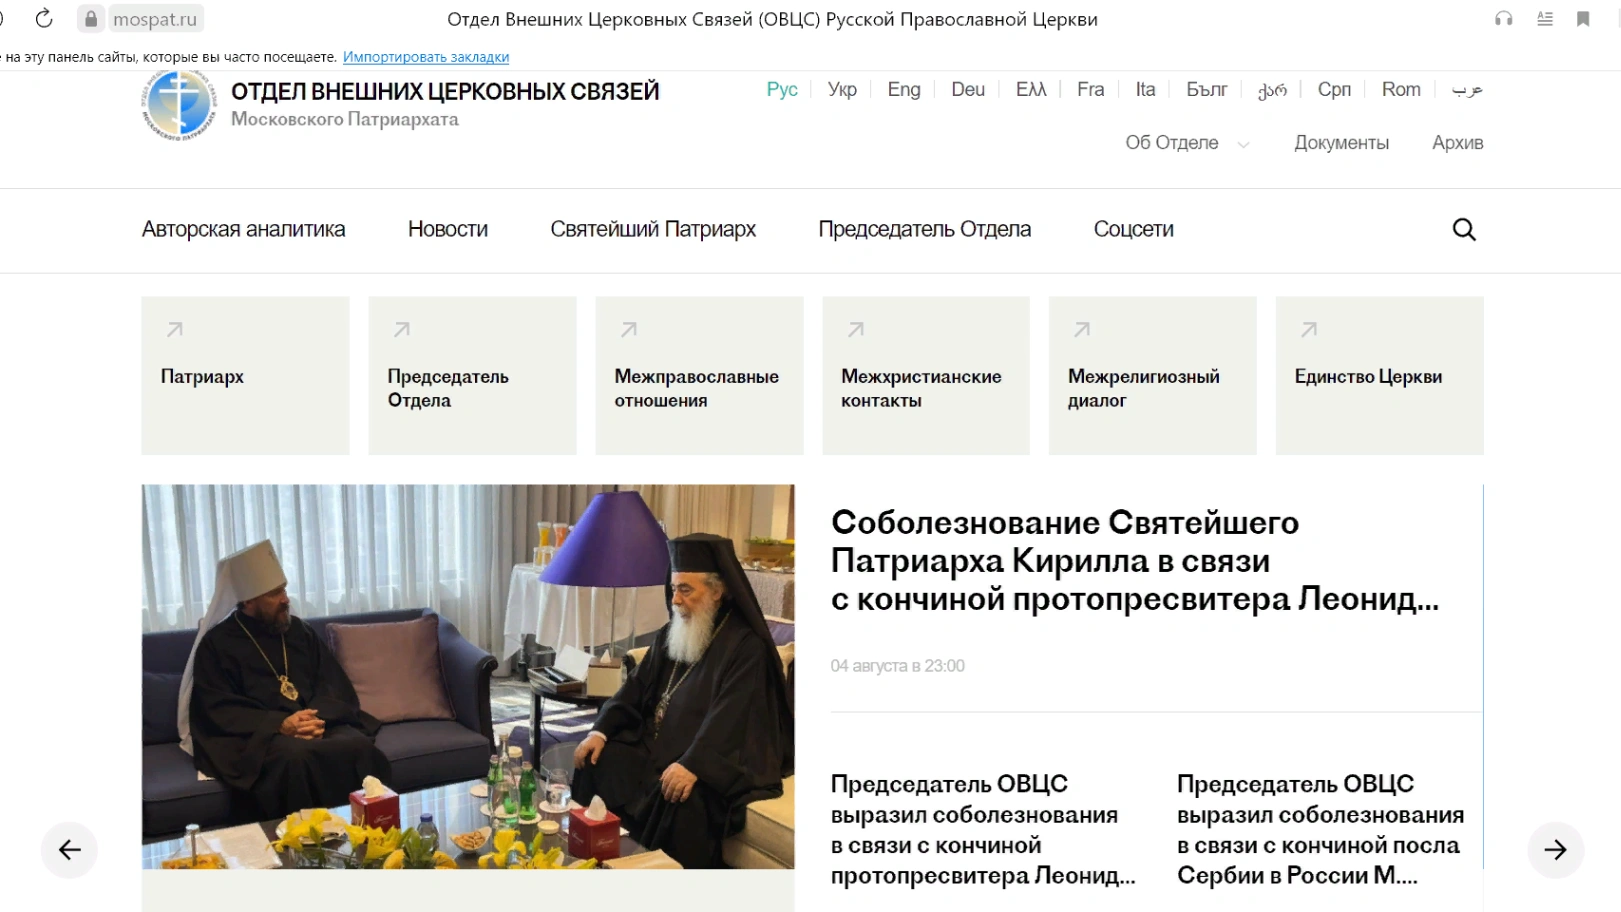 ვებ-გვერდის შექმნა, რომელიც მოიცავს რუსეთის მართლმადიდებელი ეკლესიის გარე საქმიანობას